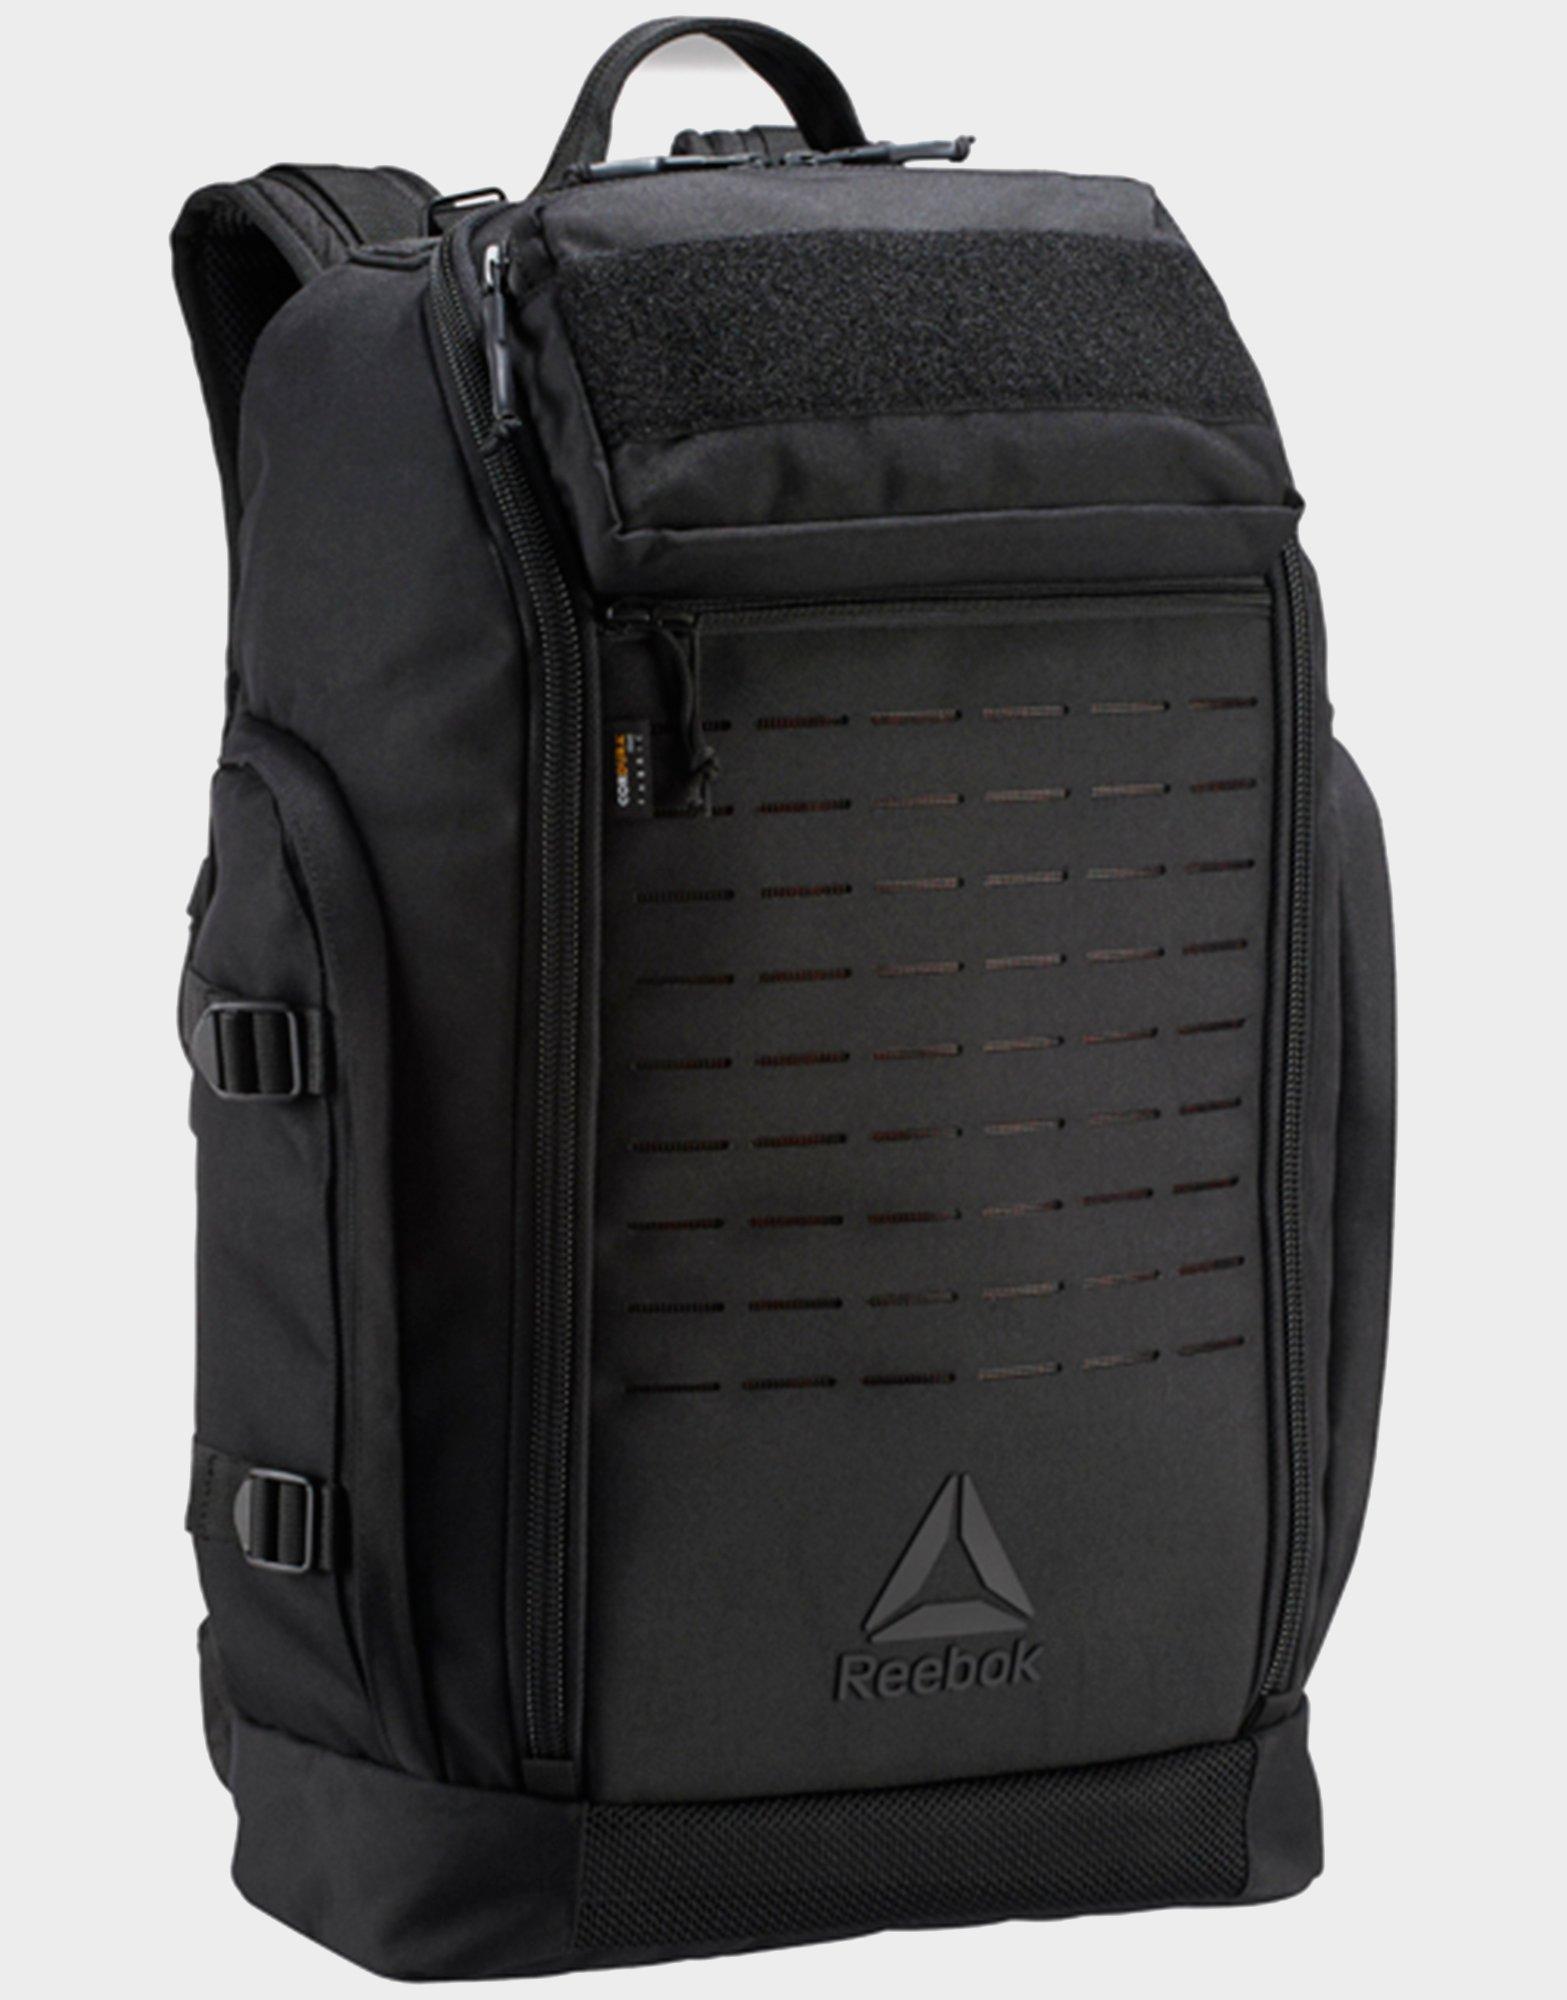 reebok crossfit backpack uk - 64% OFF 